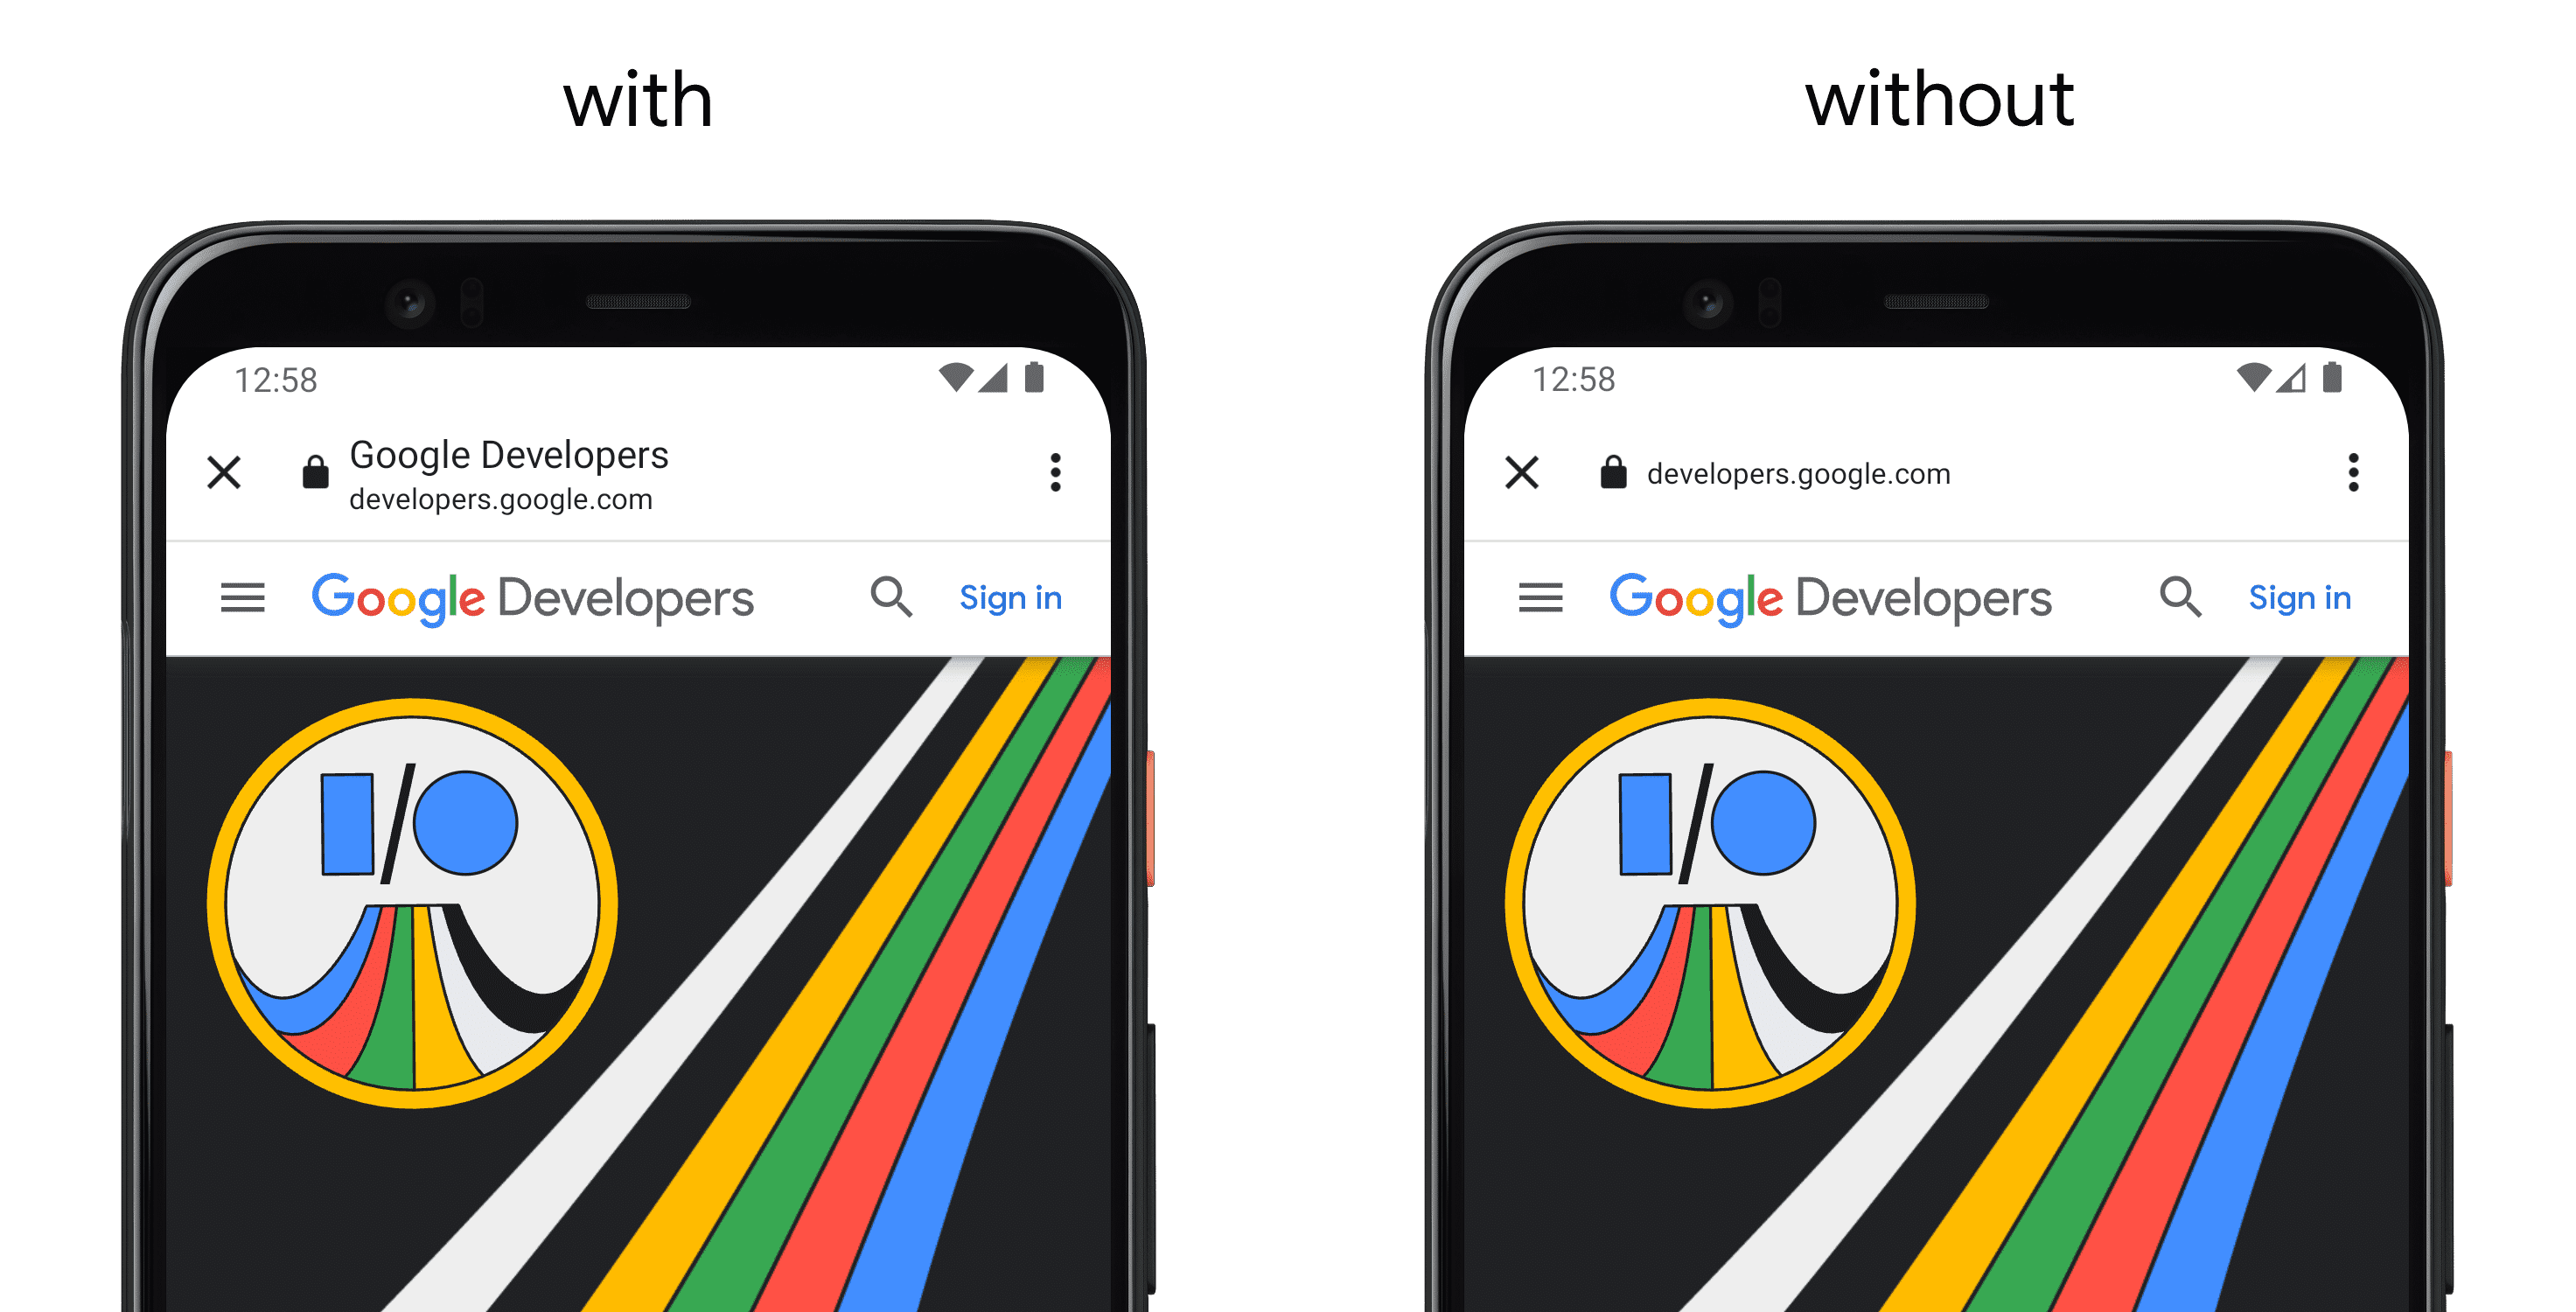 Слева телефон, на котором показано приложение с использованием setShowTitle(), а справа отдельный телефон без API.